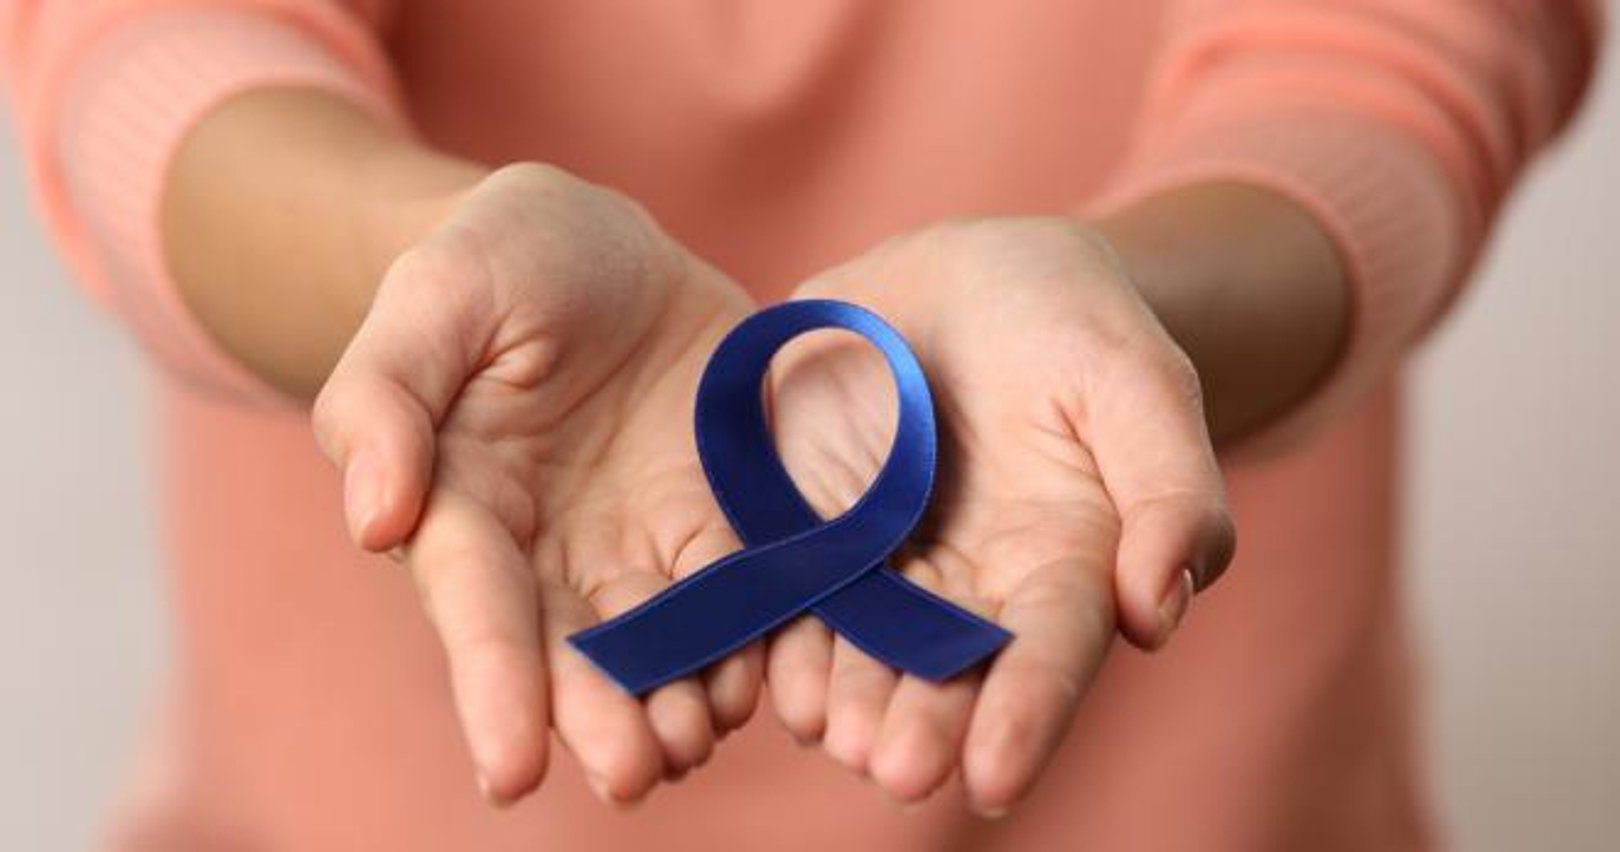 Detección temprana mejor aliado contra el cáncer colorrectal